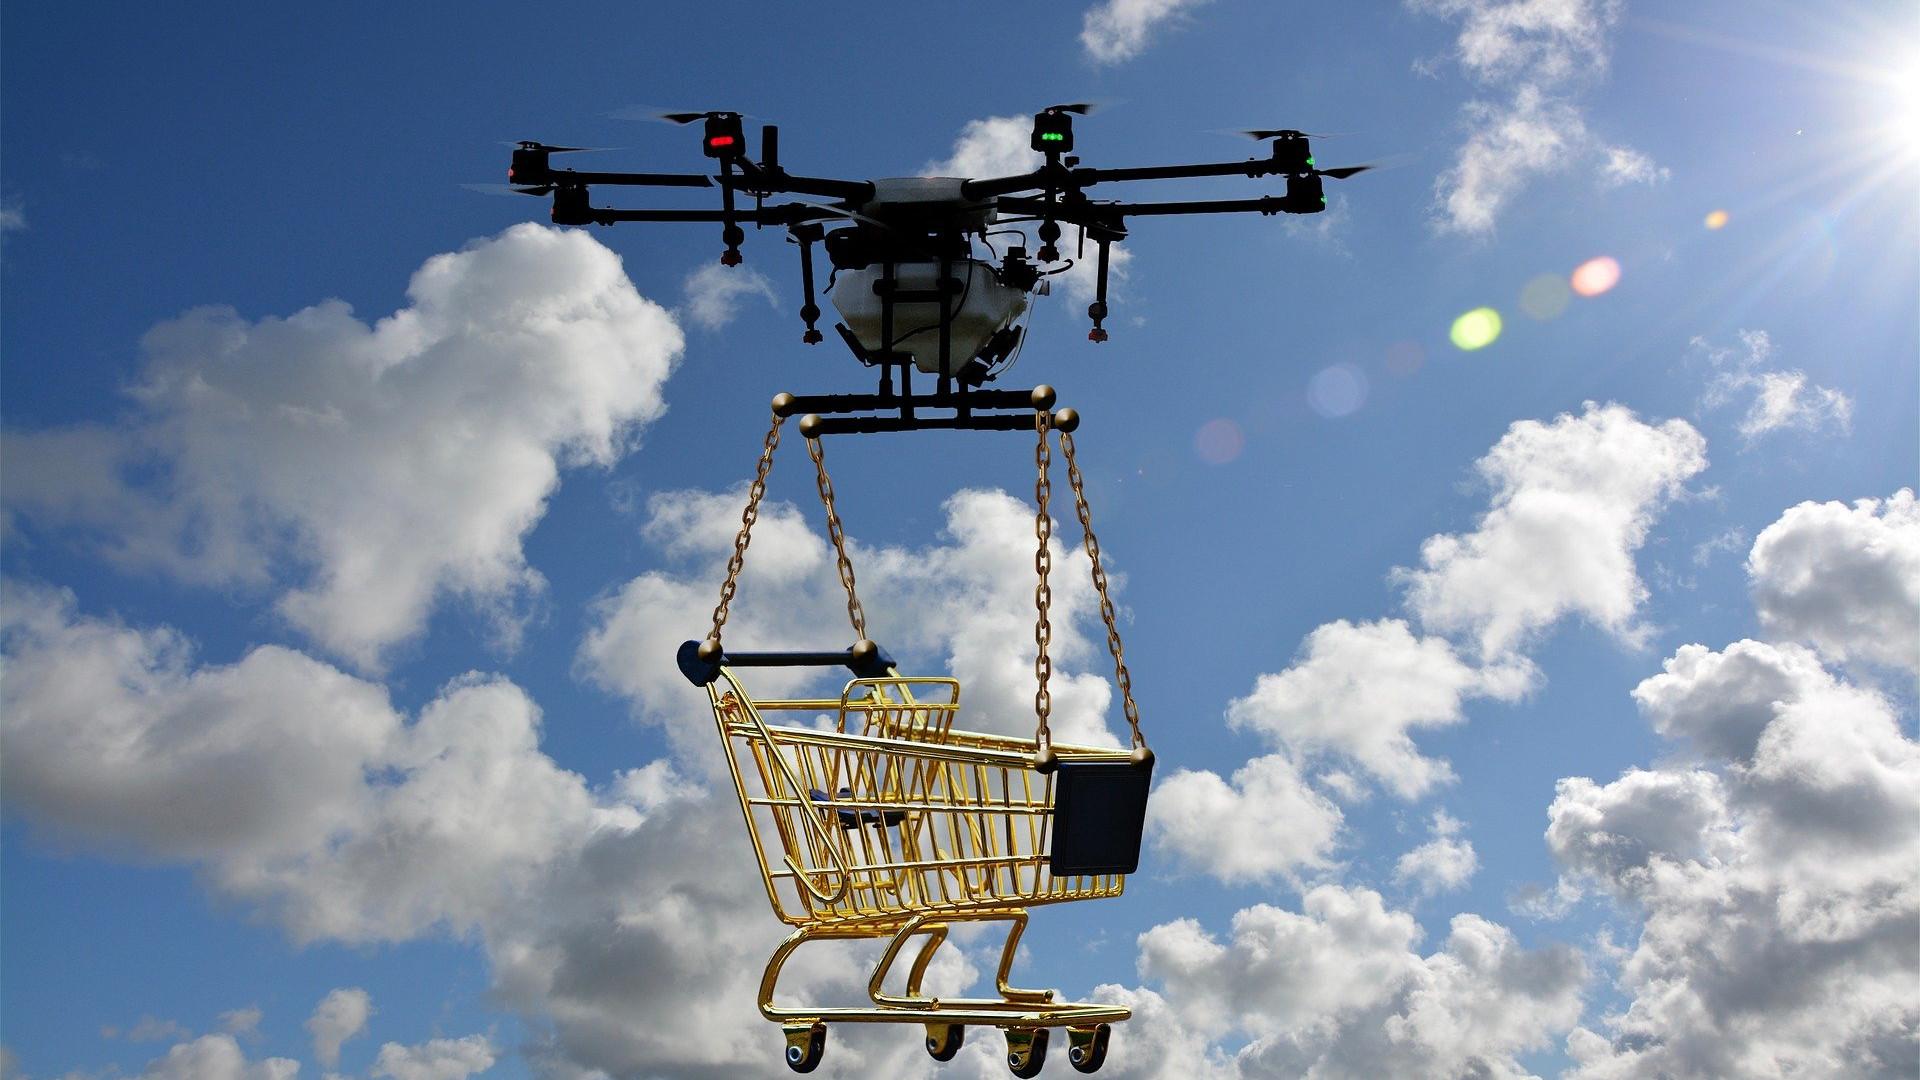 Tulevaisuudessa droneja voidaan mahdollisesti käyttää ostoksien kotiinkuljettamisen lisäksi myös rakennustyömailla materiaalien kuljetukseen